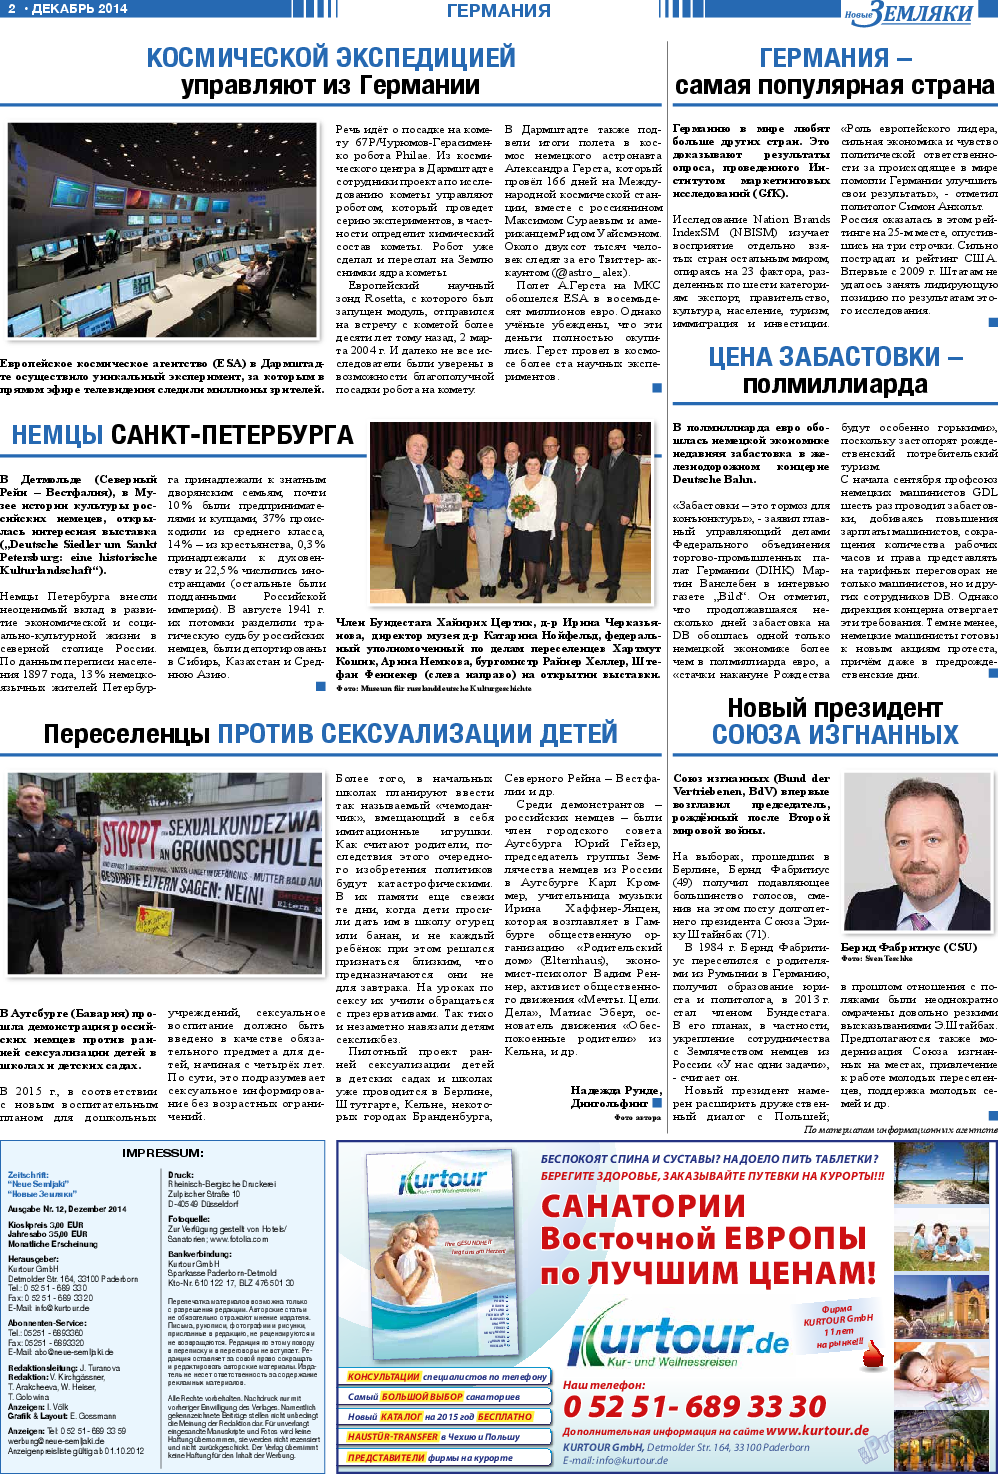 Новые Земляки, газета. 2014 №12 стр.2